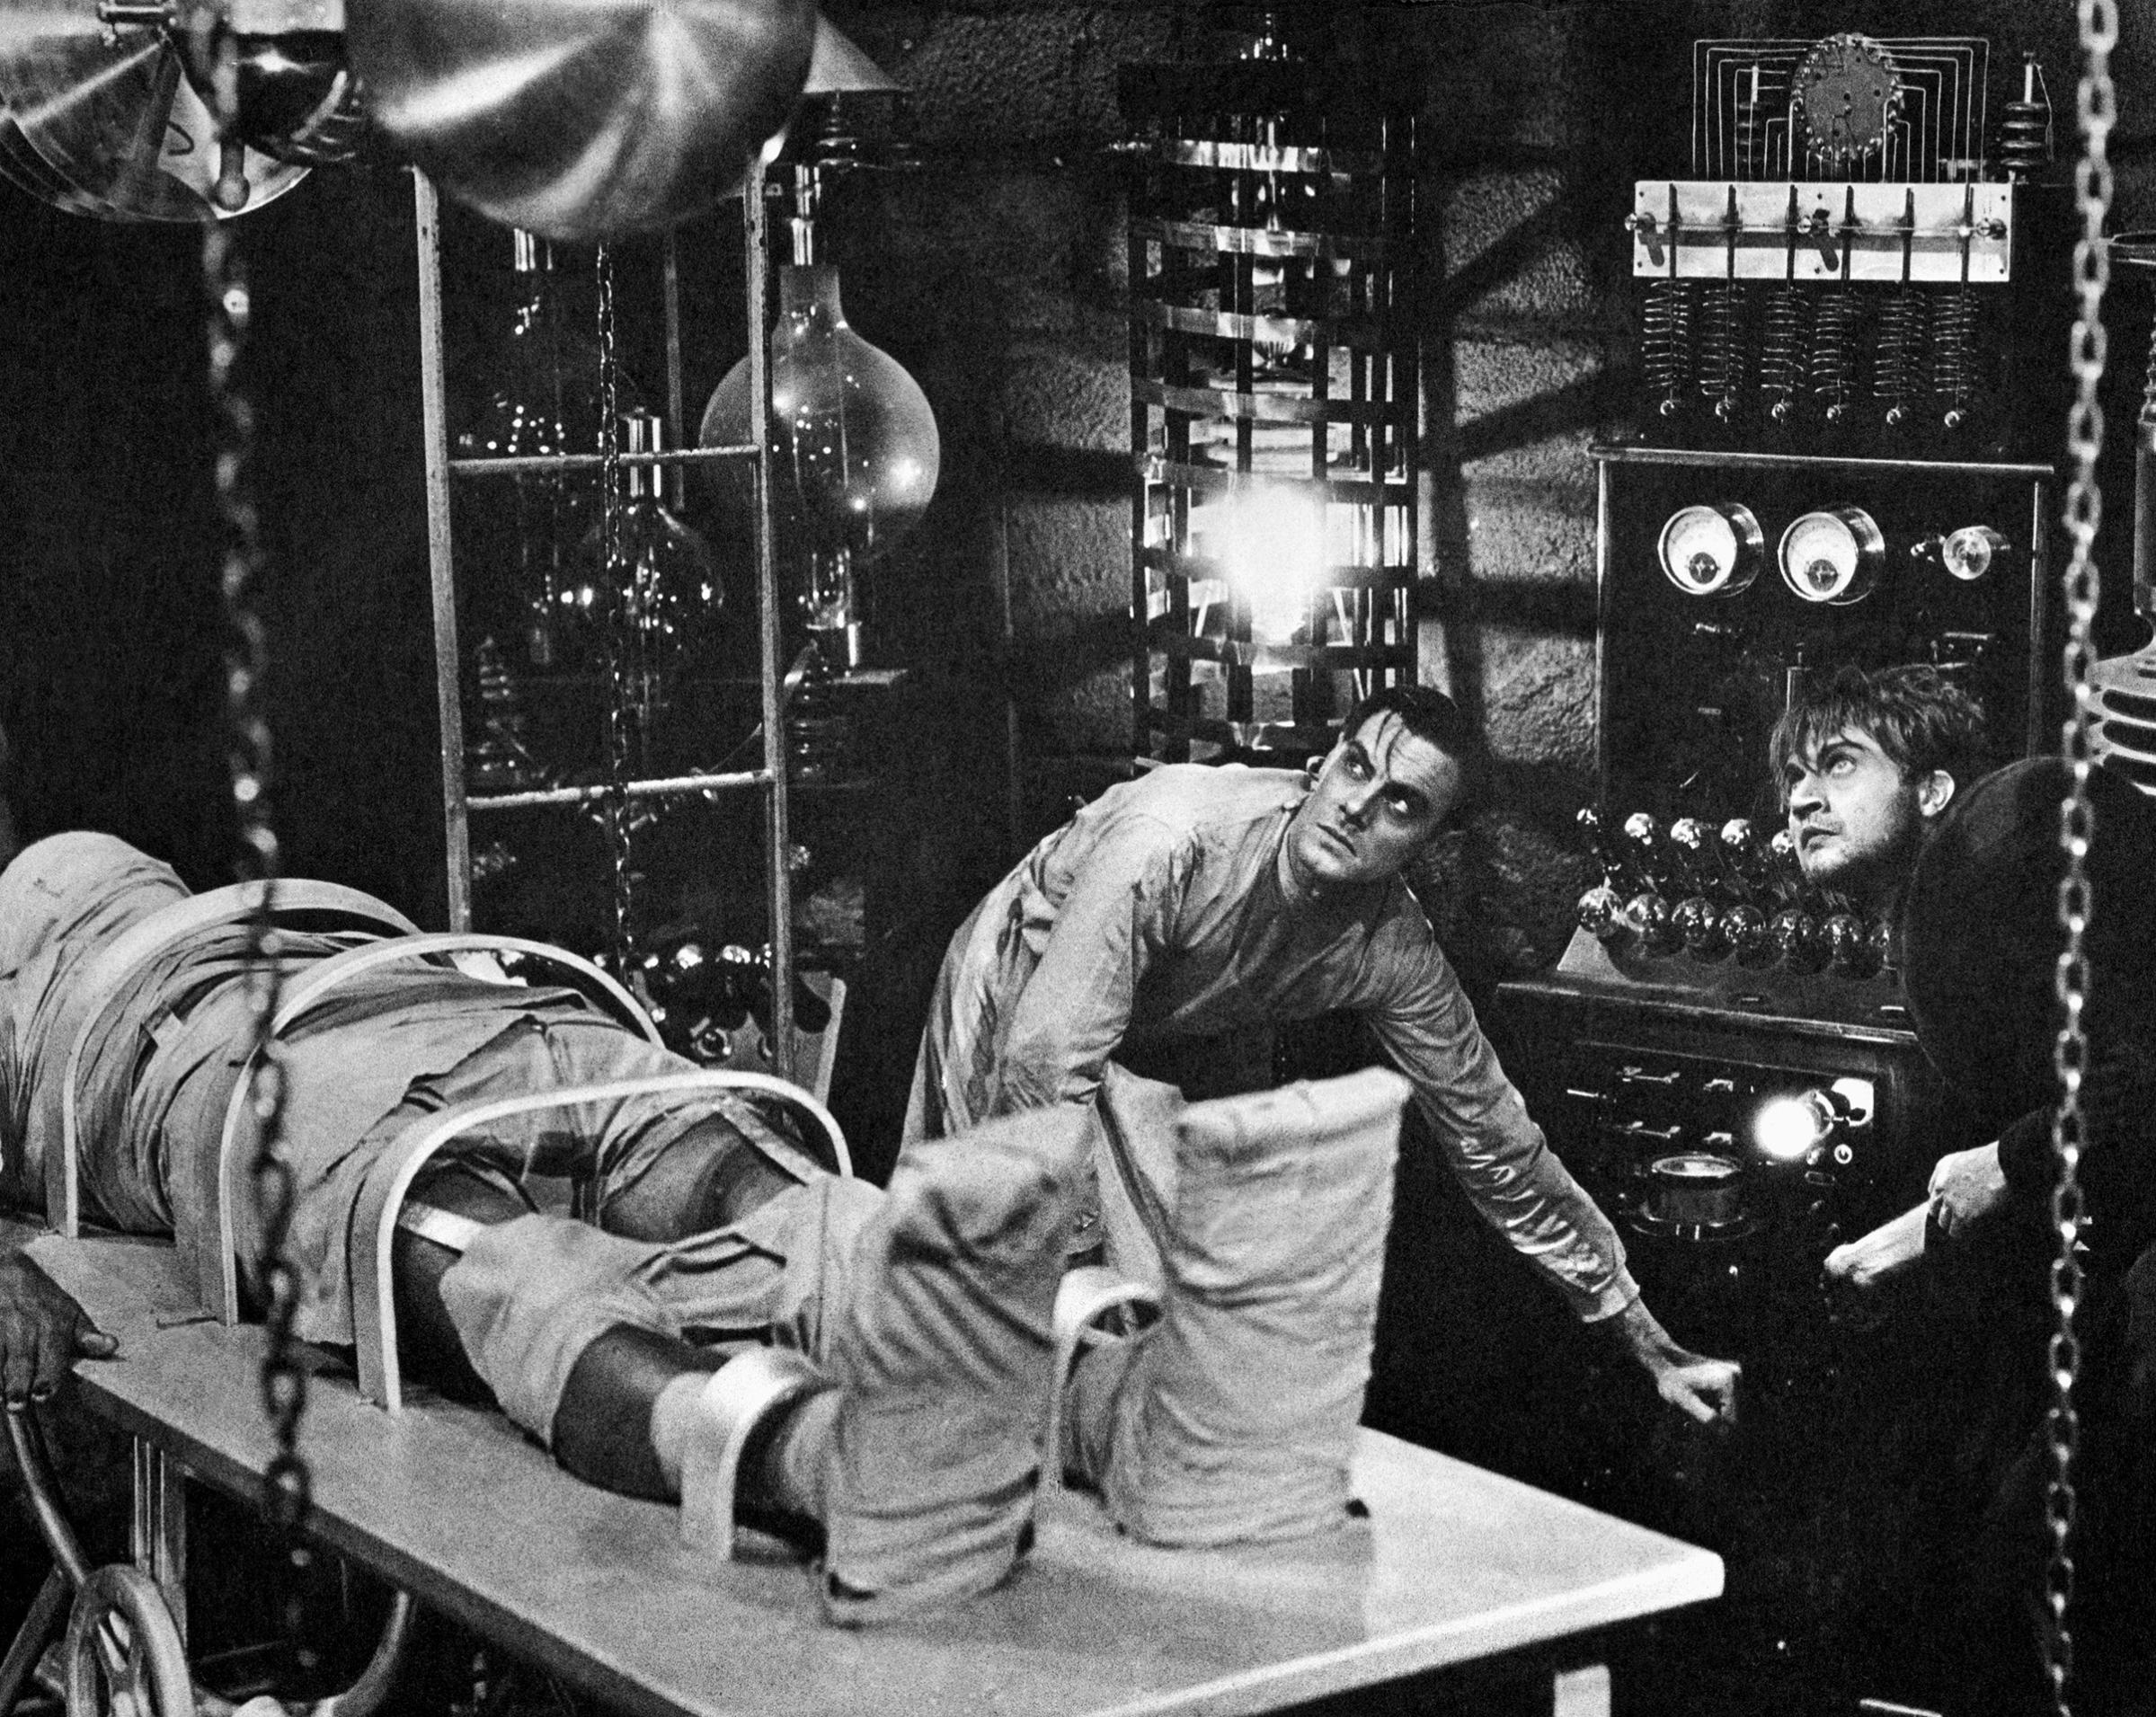 Dr. Frankenstein Bringing the Monster to Life